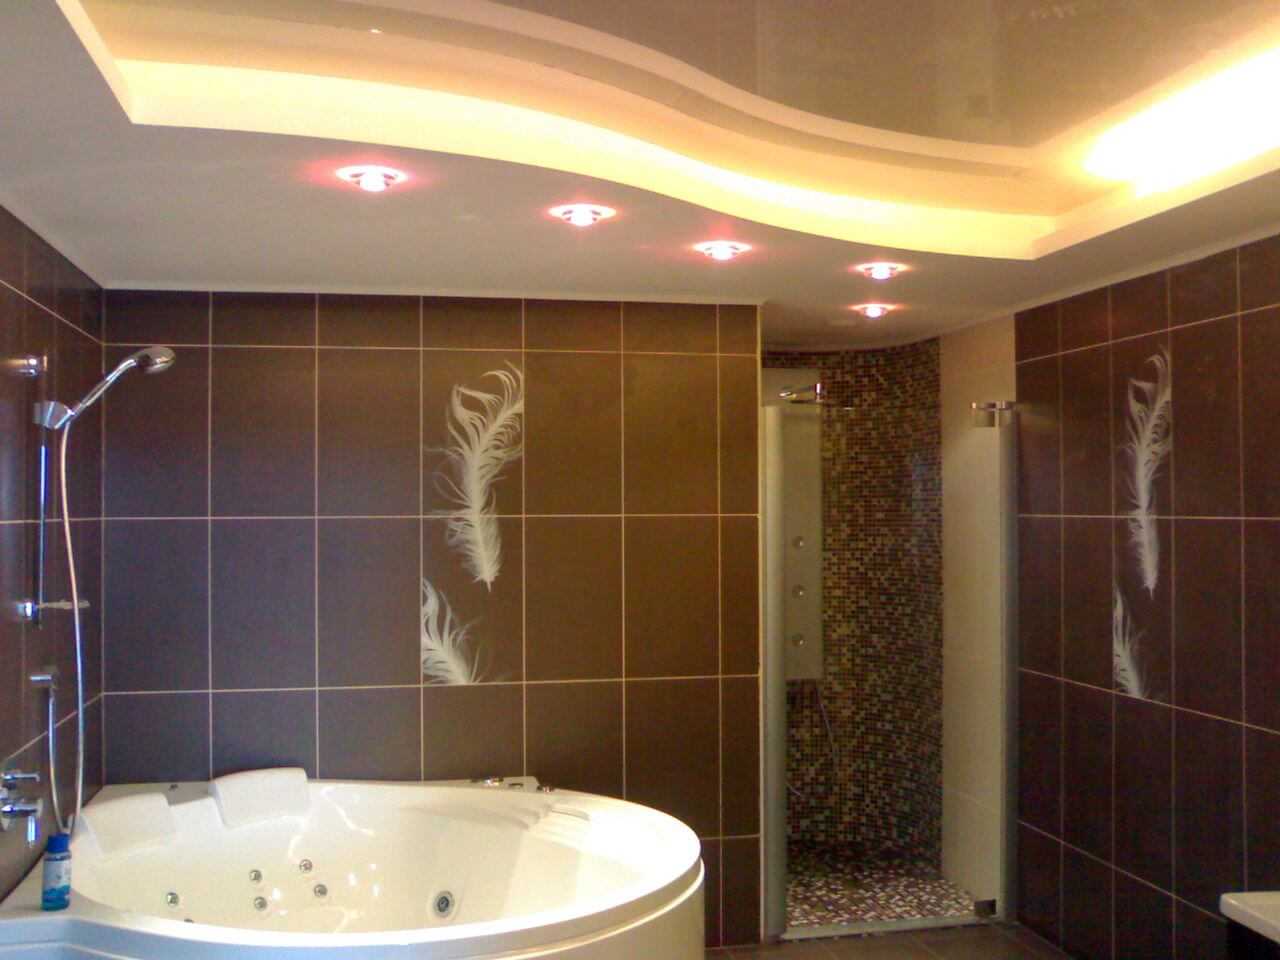 Как выбрать лучший вариант для потолка в ванной: обзор материалов и способов отделки, их плюсы и минусы